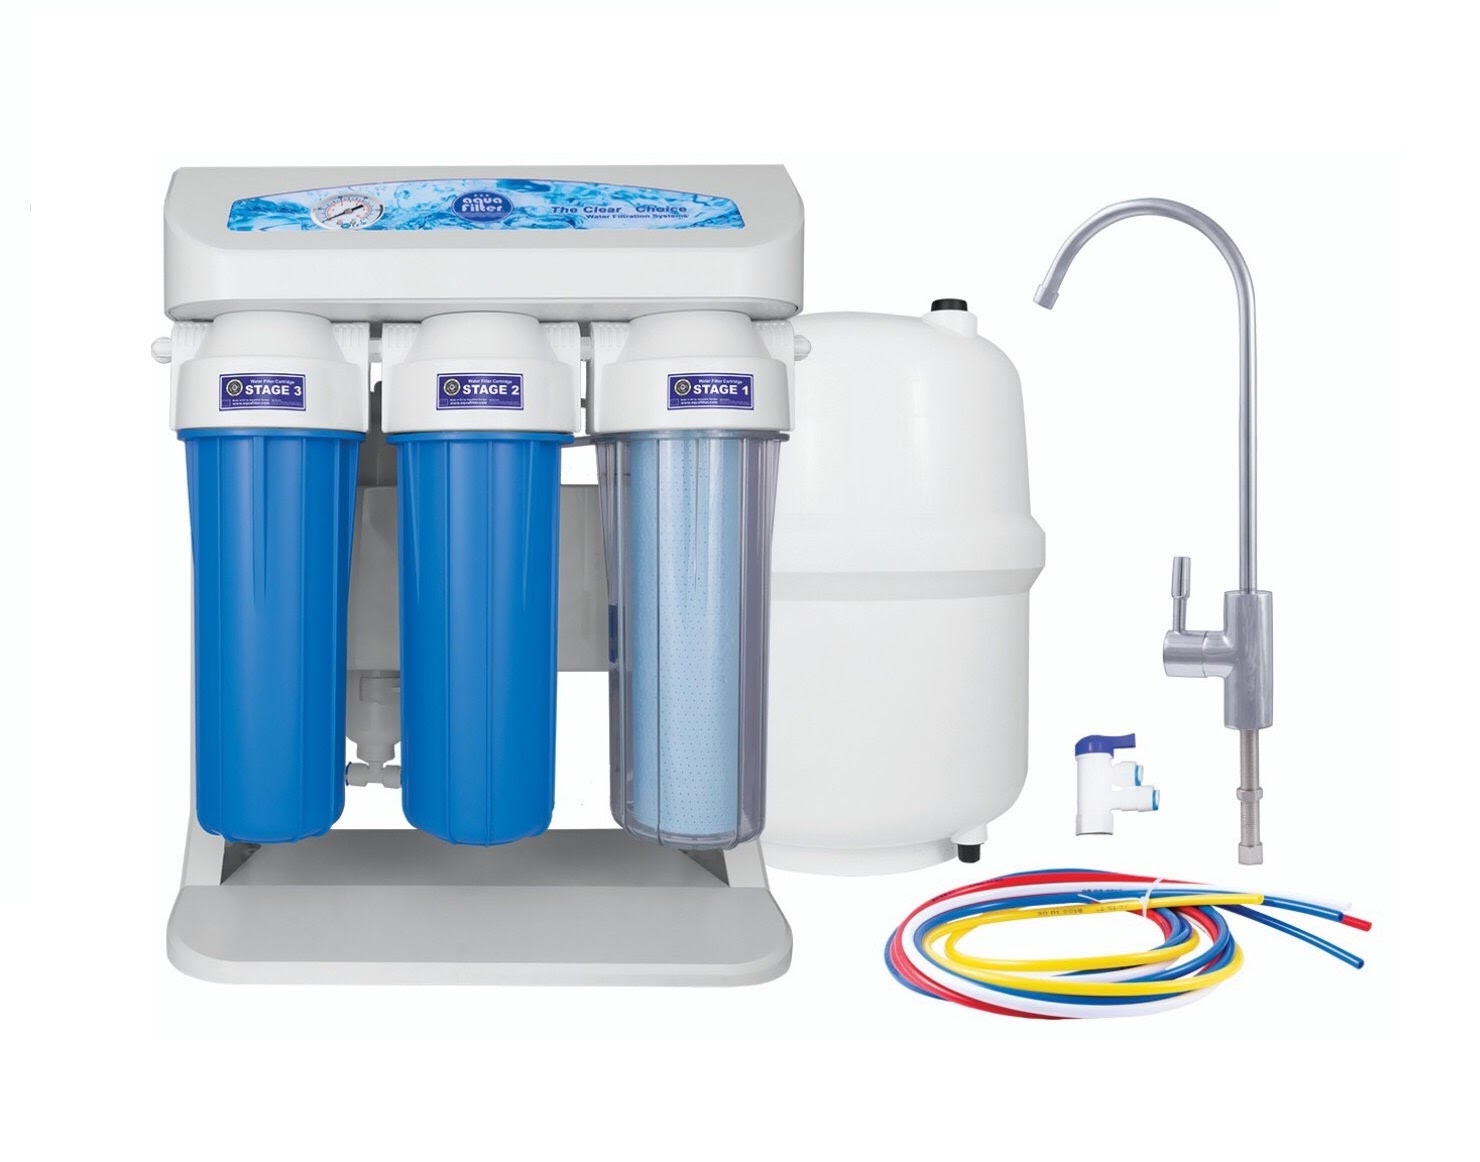 Máy lọc nước RO Elite hãng Aquafilter là sản phẩm có mức giá phù hợp nhất thị trường